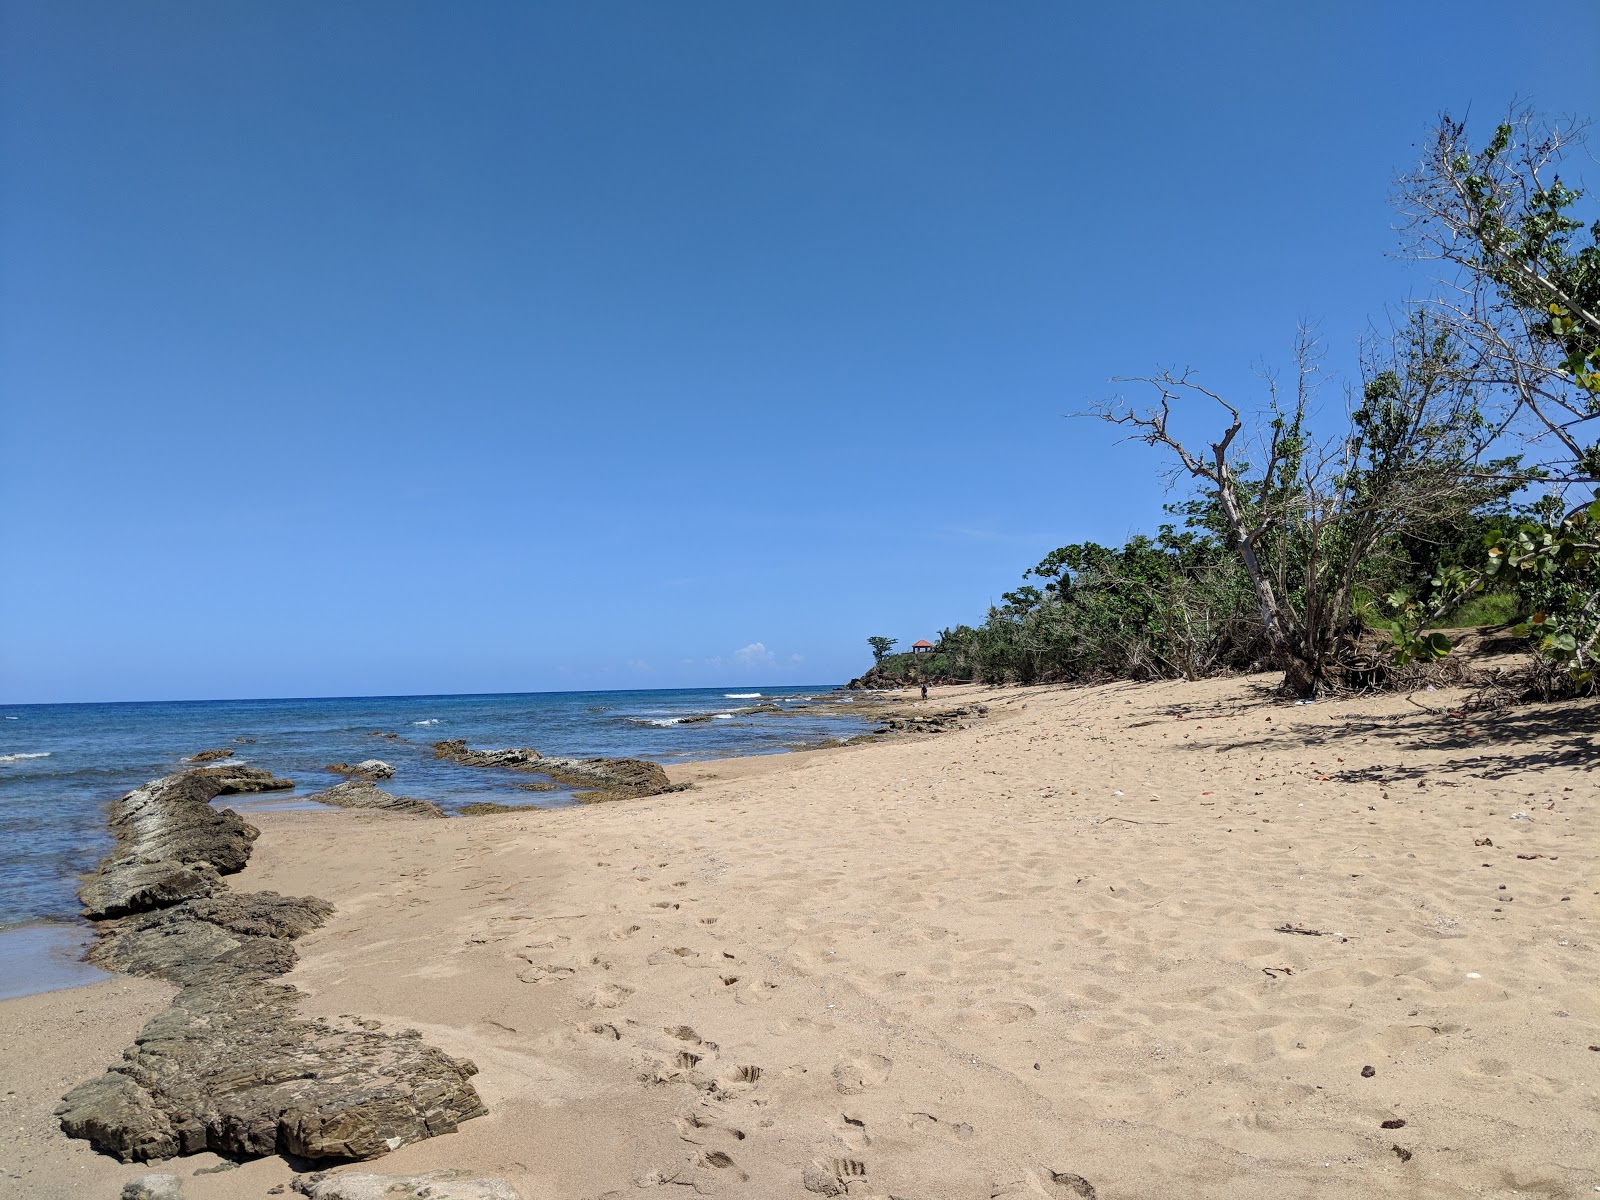 Foto di Playa Maria con una superficie del sabbia fine e luminosa